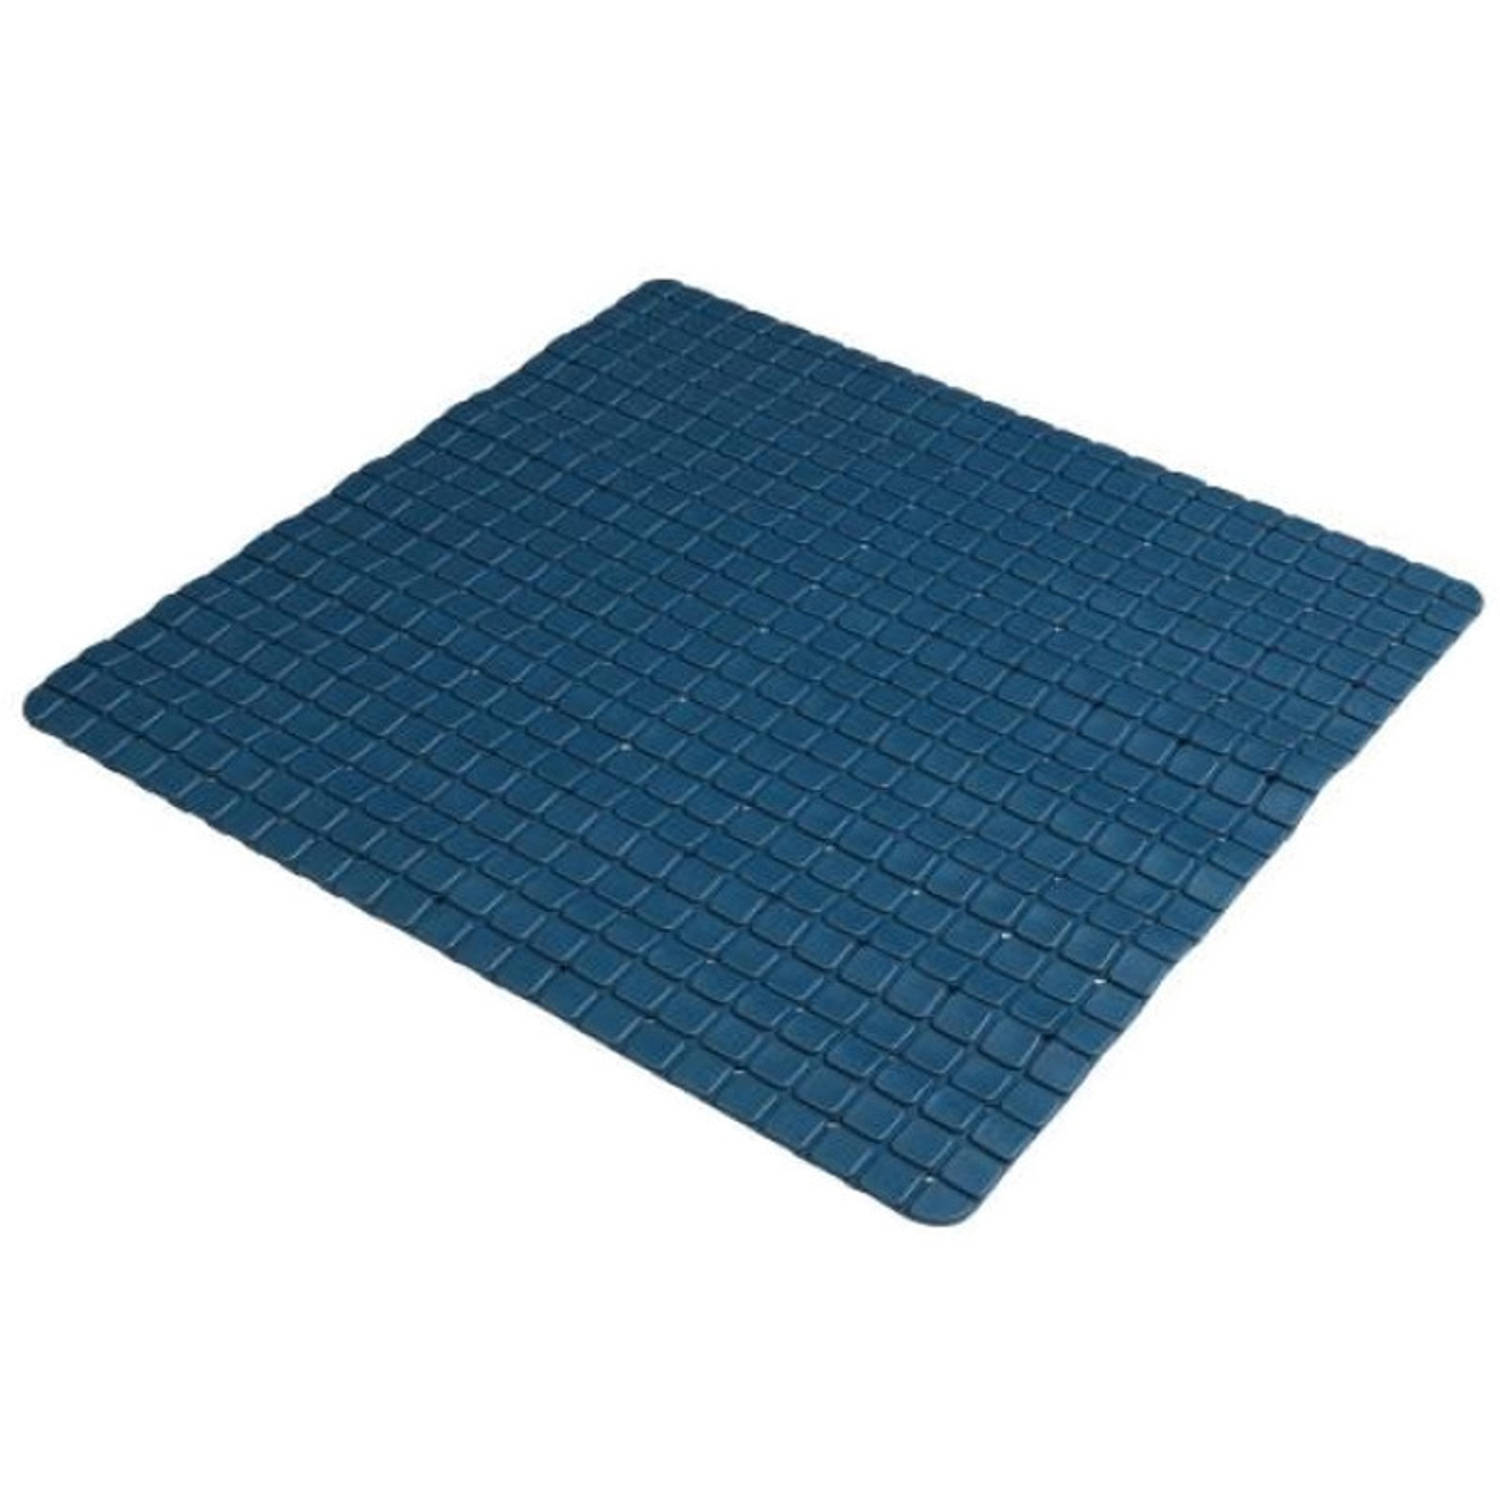 Urban Living Badkamer-douche anti slip mat rubber voor op de vloer donkerblauw 55 x 55 cm Badmatjes